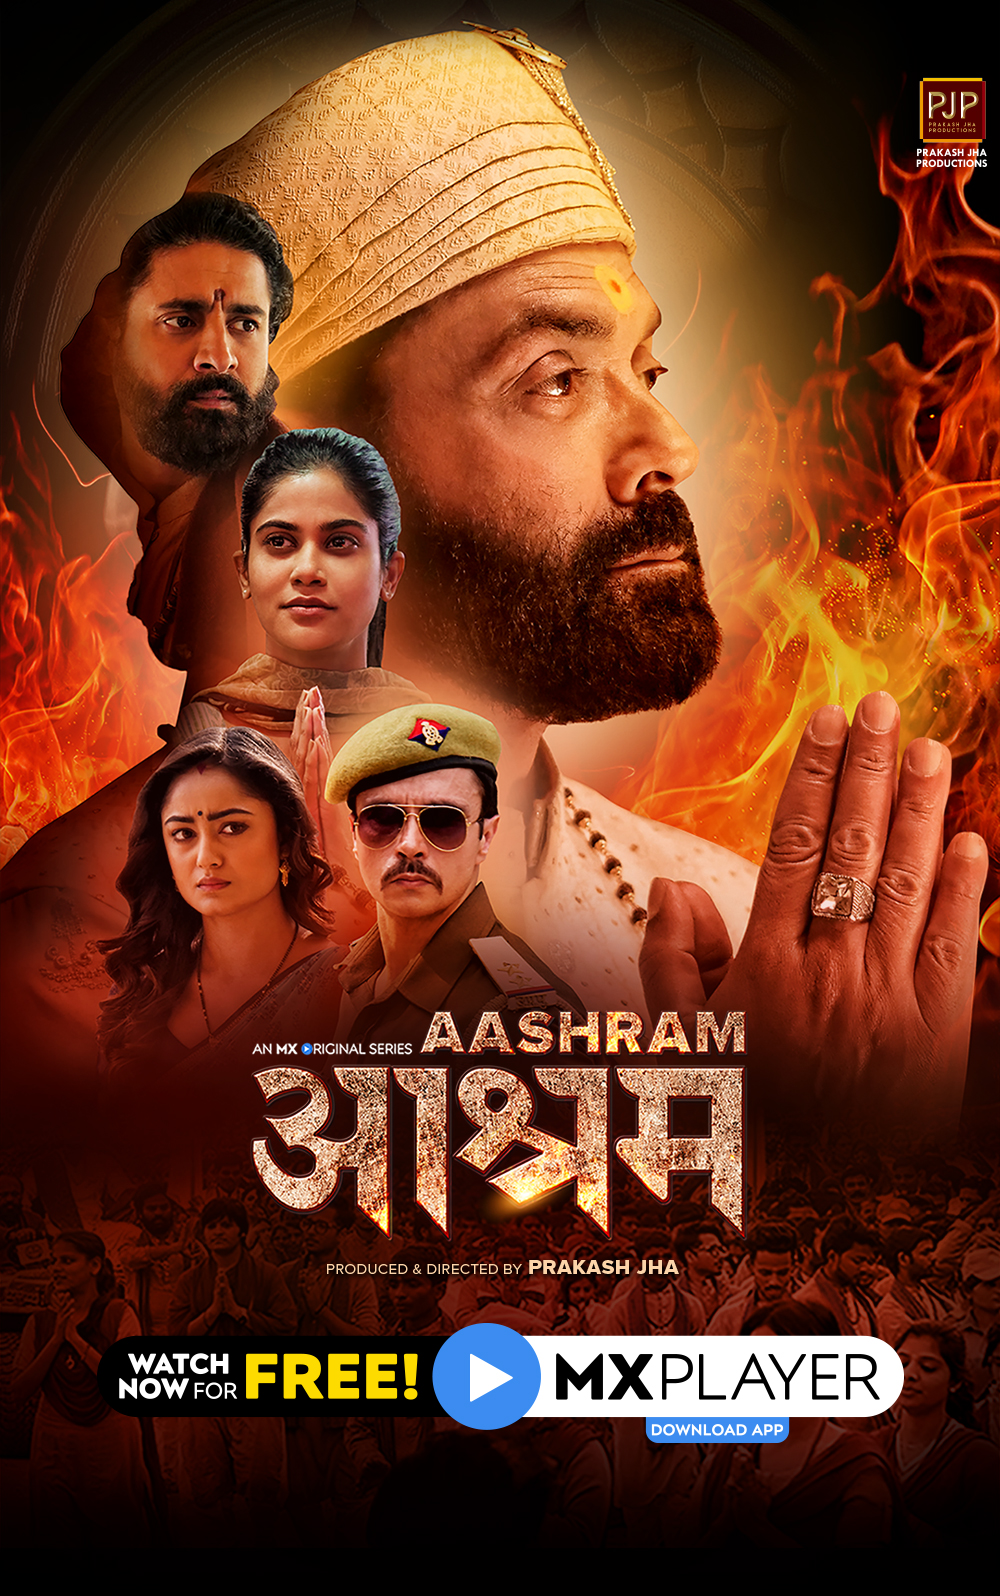 aashram poster